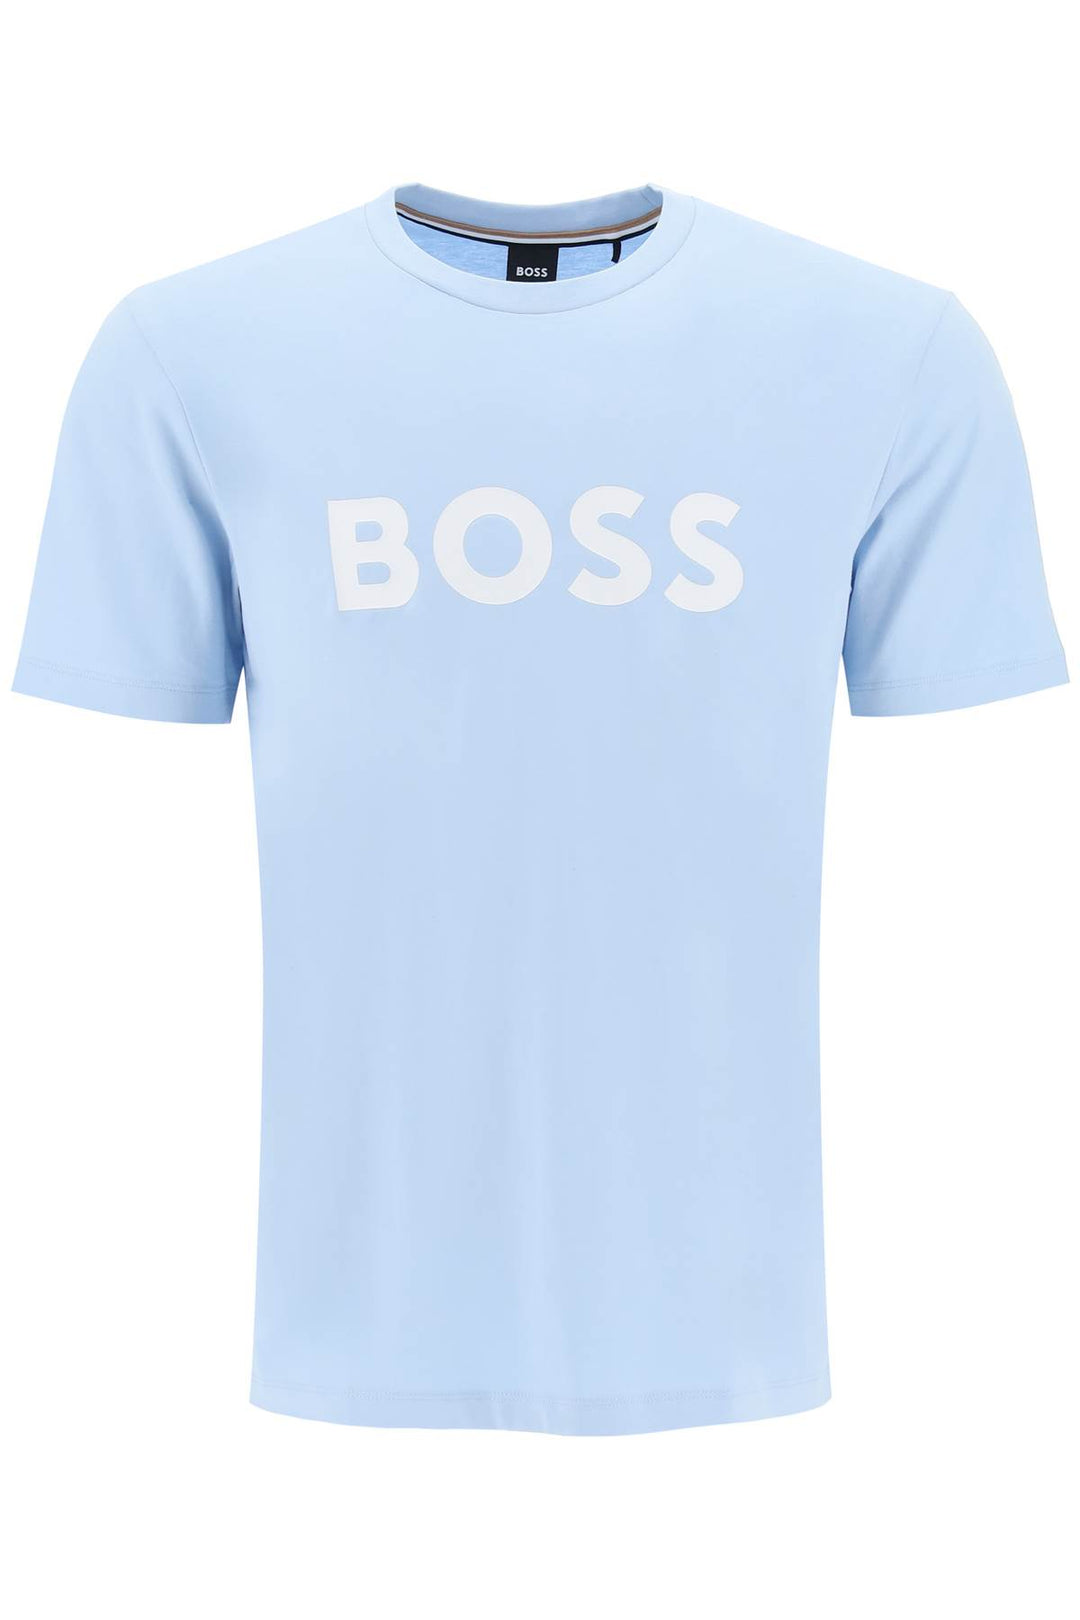 Boss Tiburt 354 Logo Print T Shirt   Light Blue